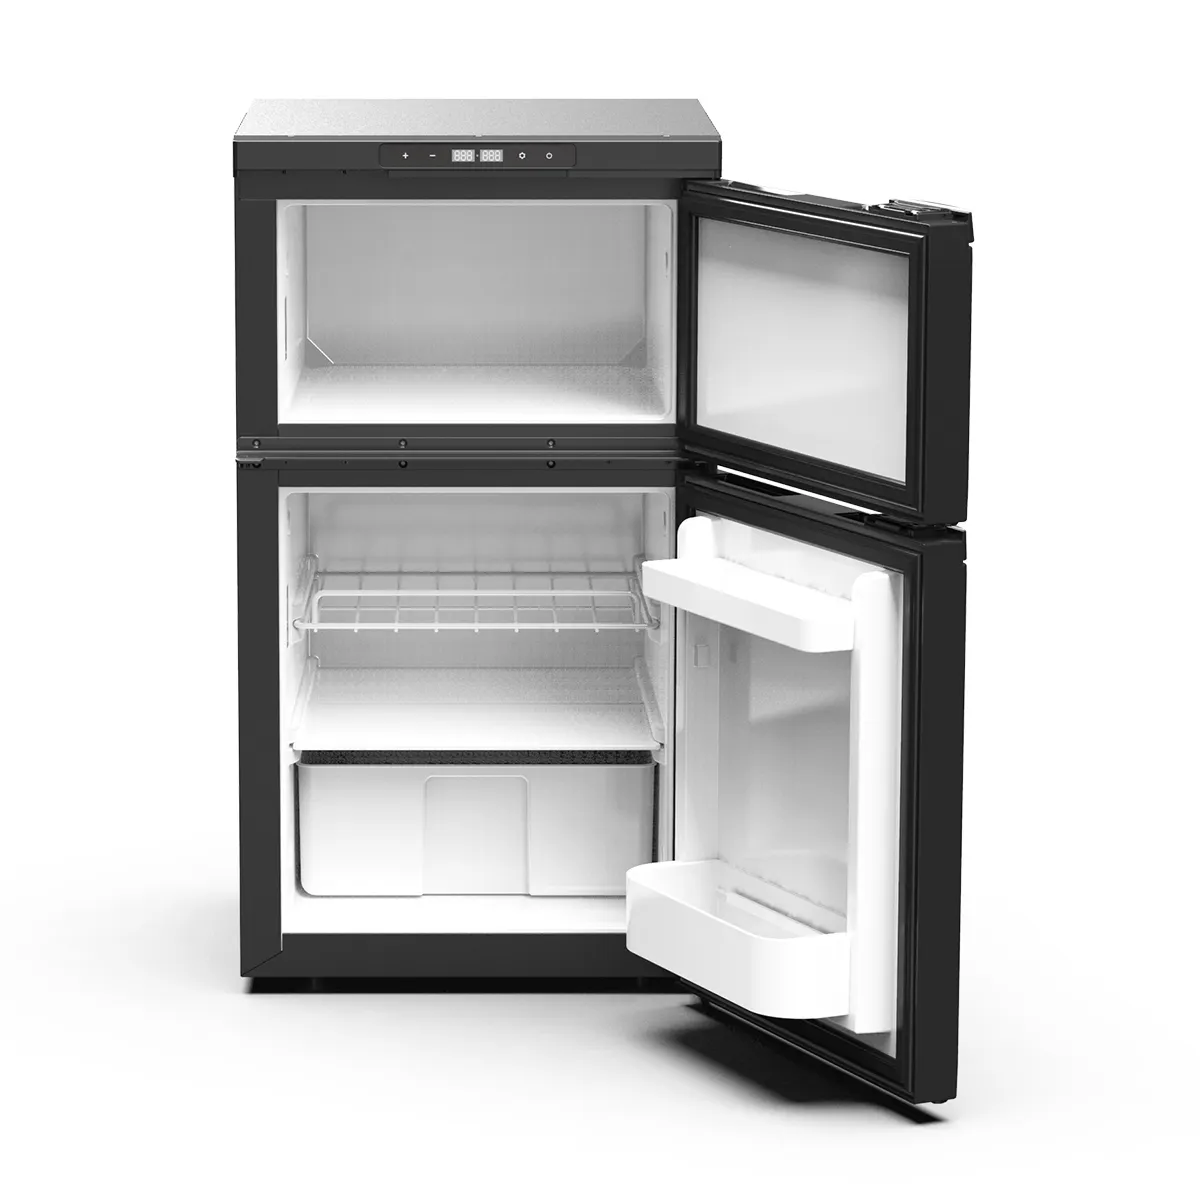 Refrigerador elétrico portátil DR80 para uso ao ar livre, refrigerador de 12 volts para veículos, carros, caminhões, RVs, refrigeradores, refrigeradores para acampamento e eletrodomésticos